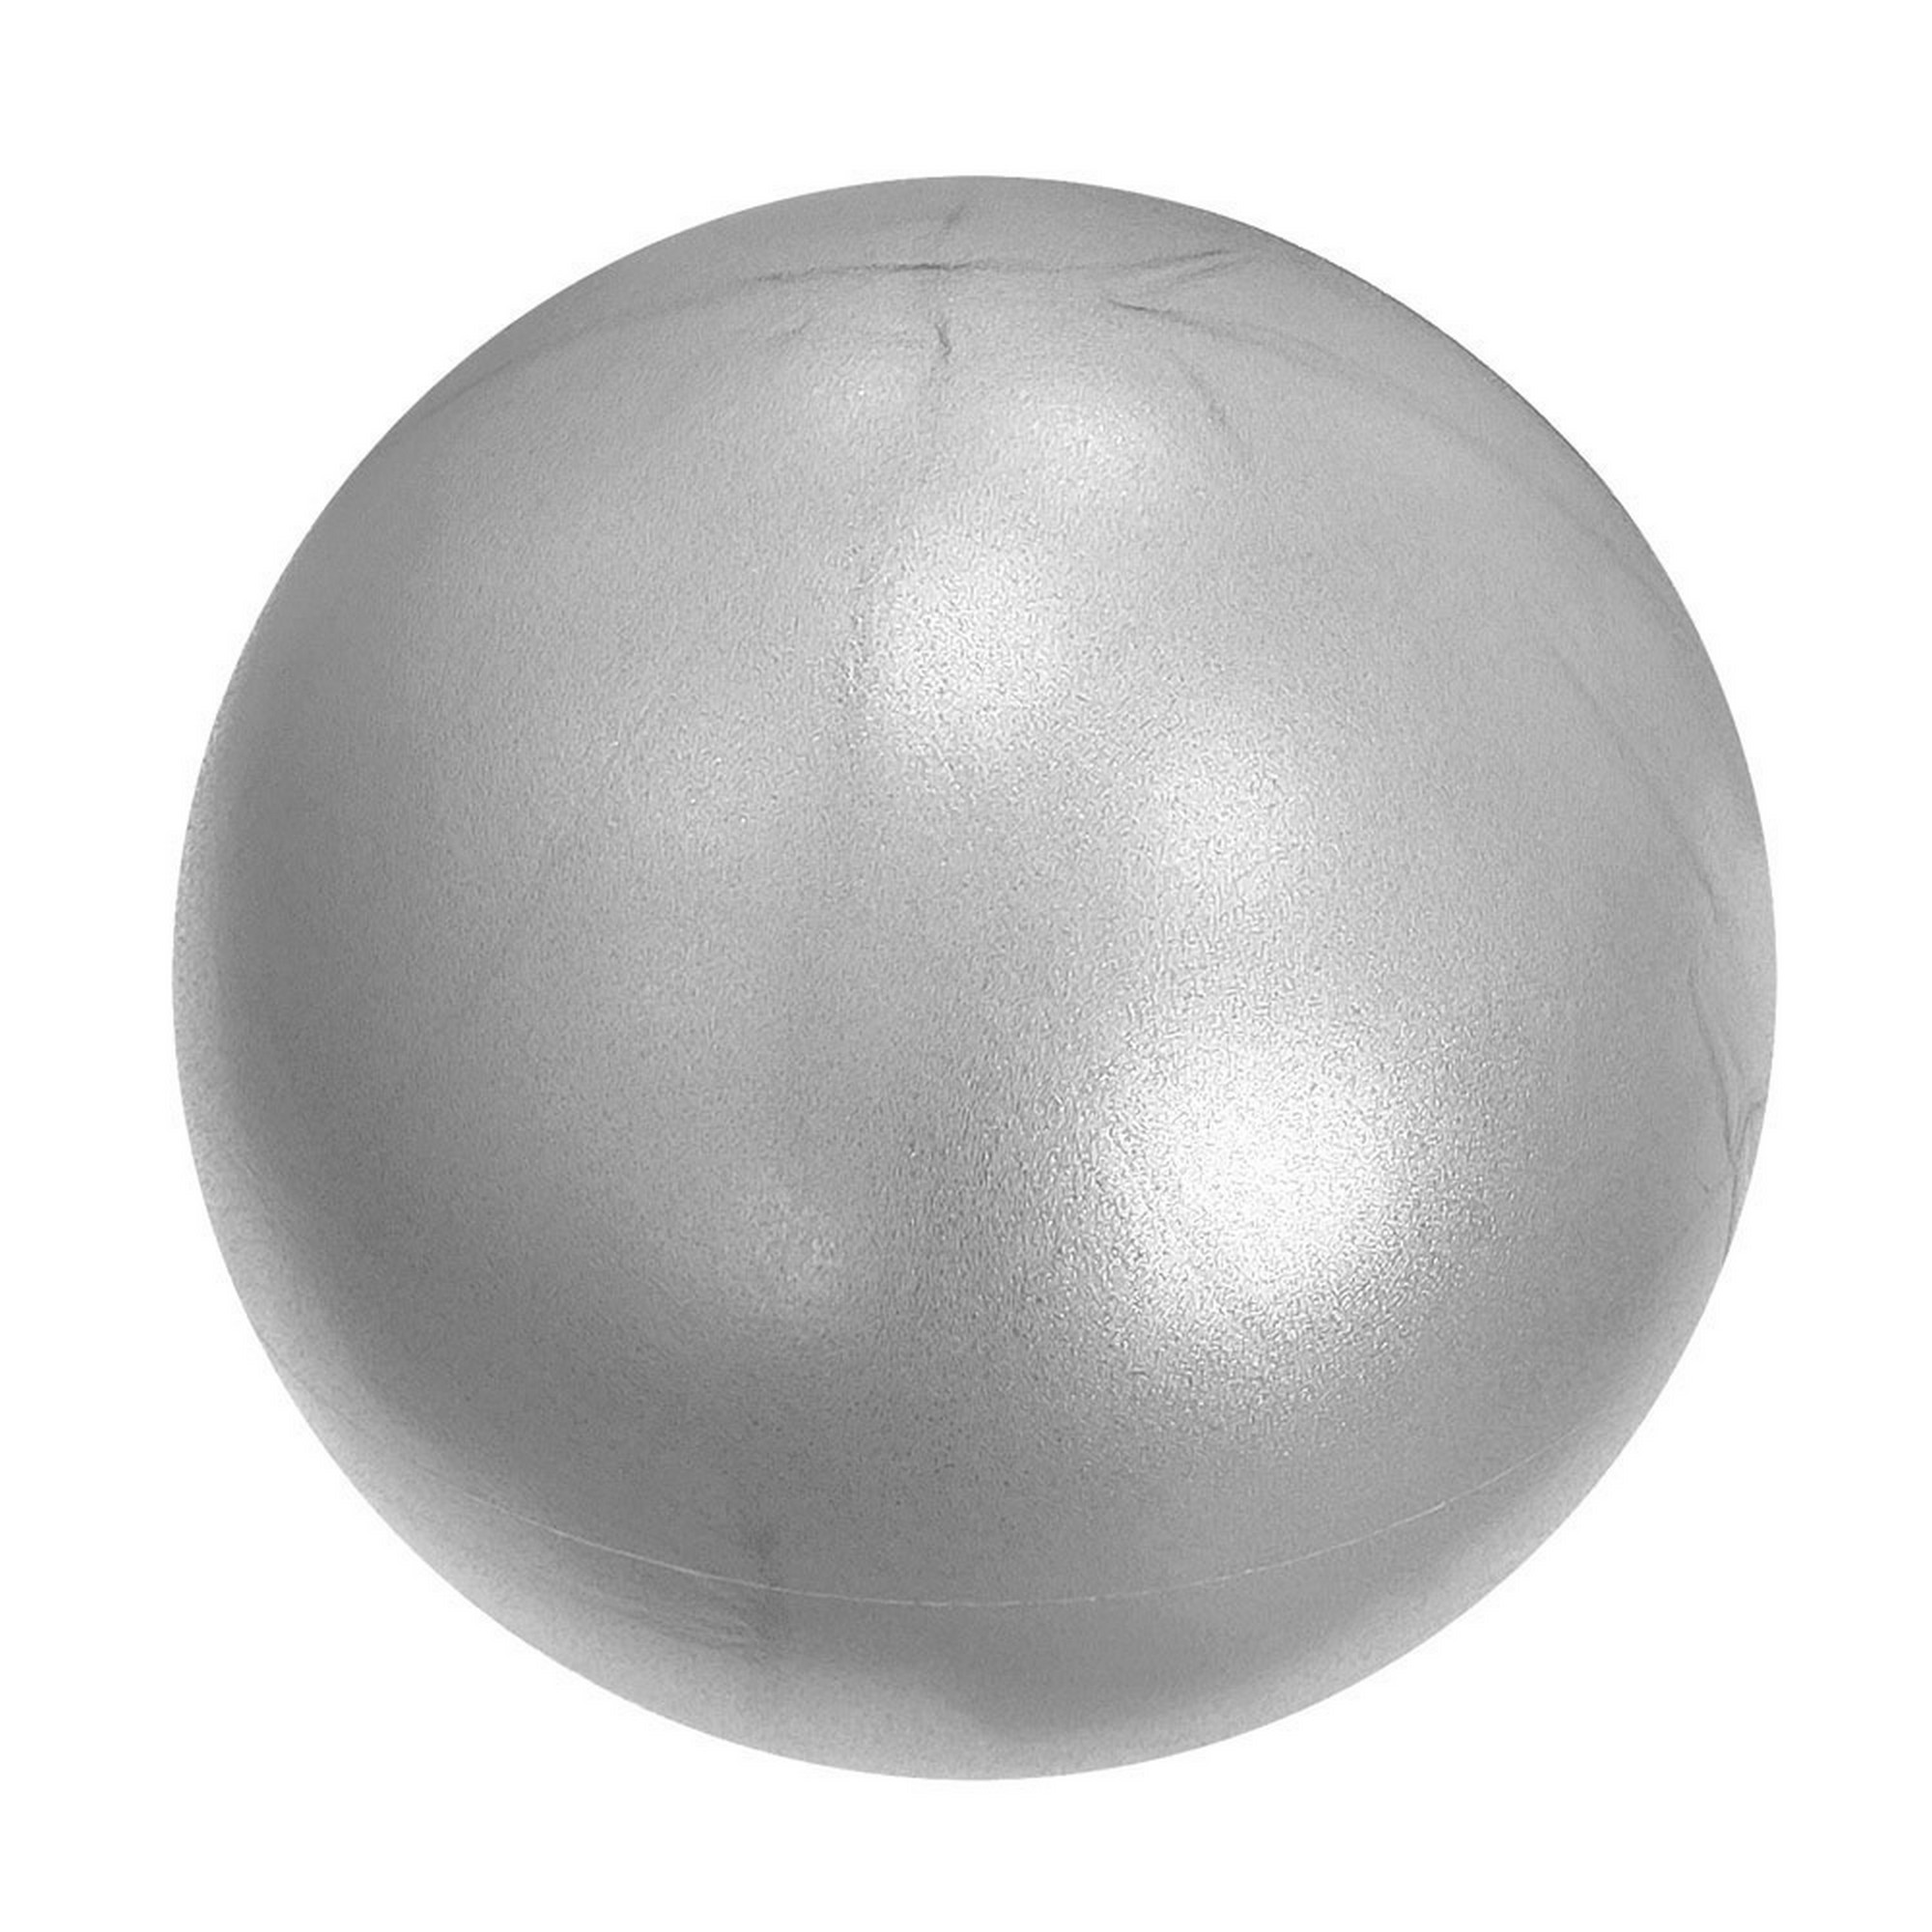 Мяч для пилатеса d20 см Sportex E3913147 серебро 2000_2000